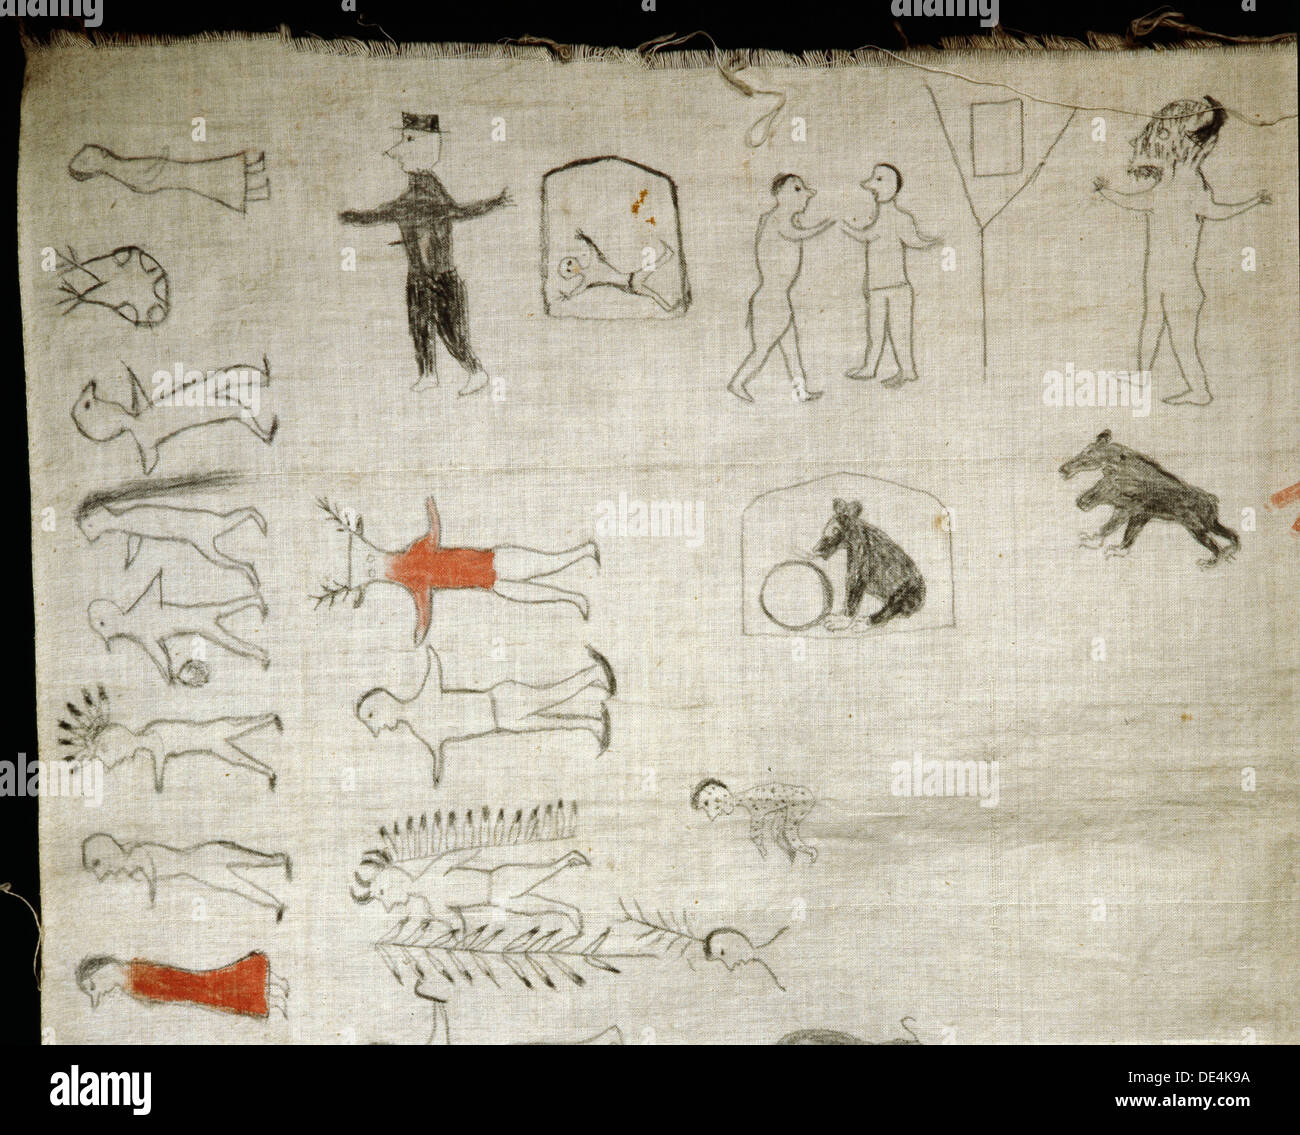 Detalle de un "recuento de invierno', un calendario pictográfica de llanuras de historia de la India. Foto de stock